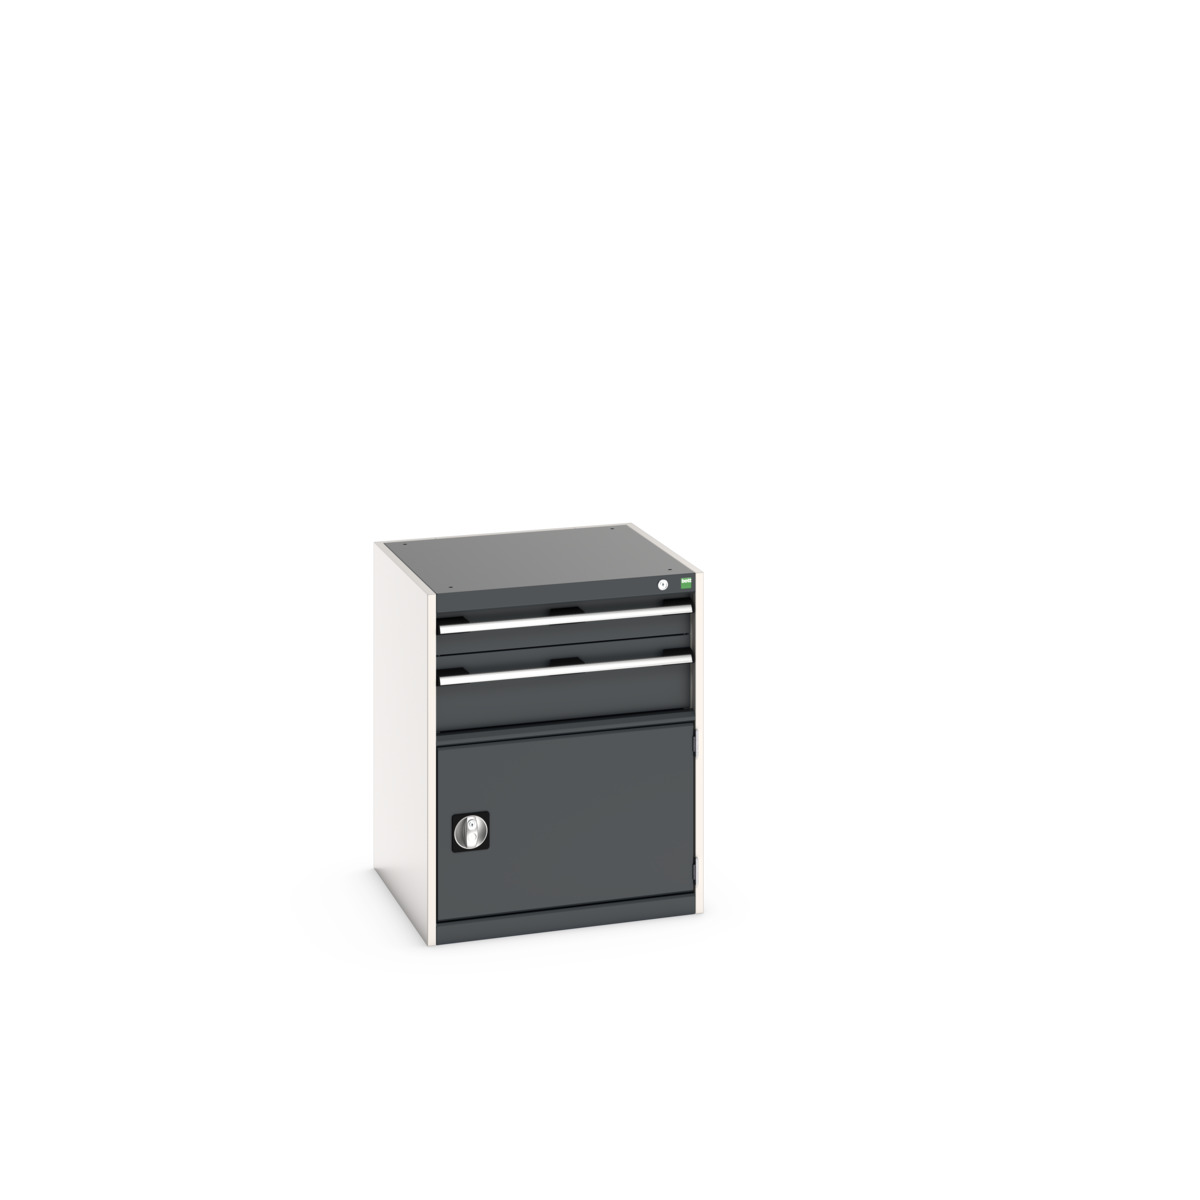 40019031. - cubio drawer-door cabinet